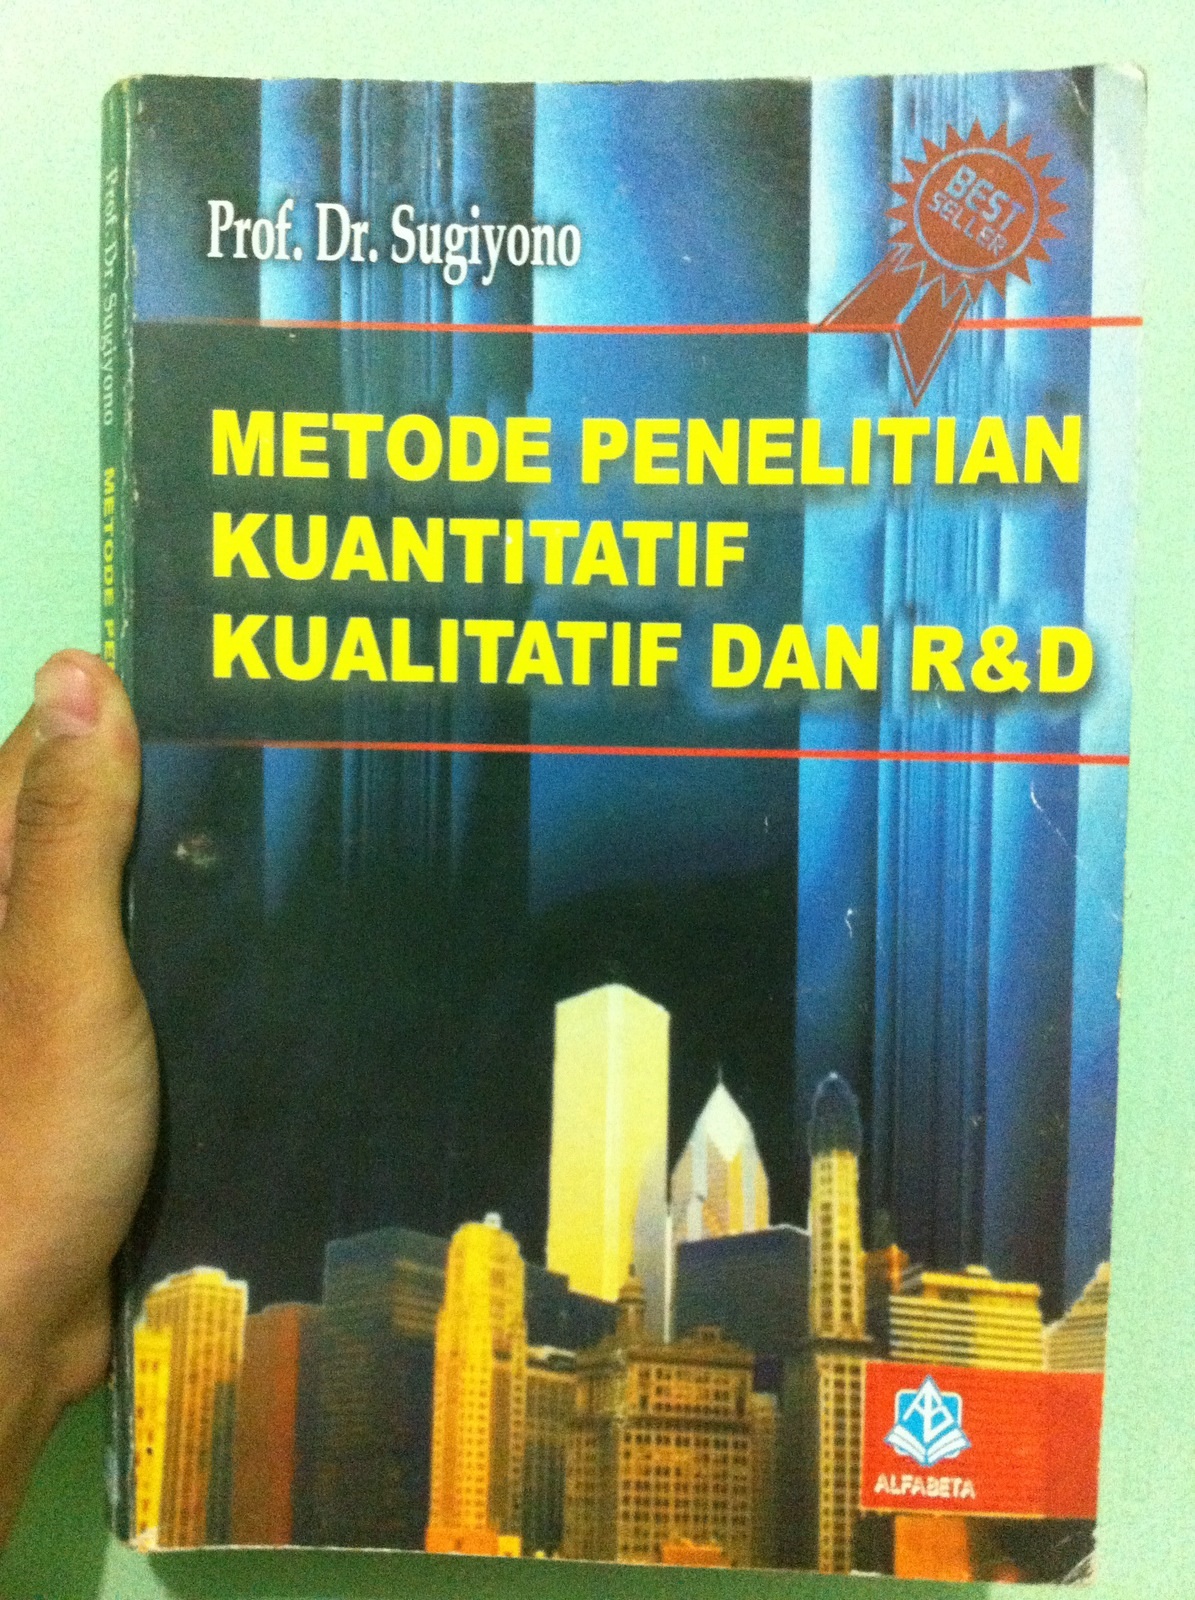 Download buku metode penelitian sugiyono 2012 pdf